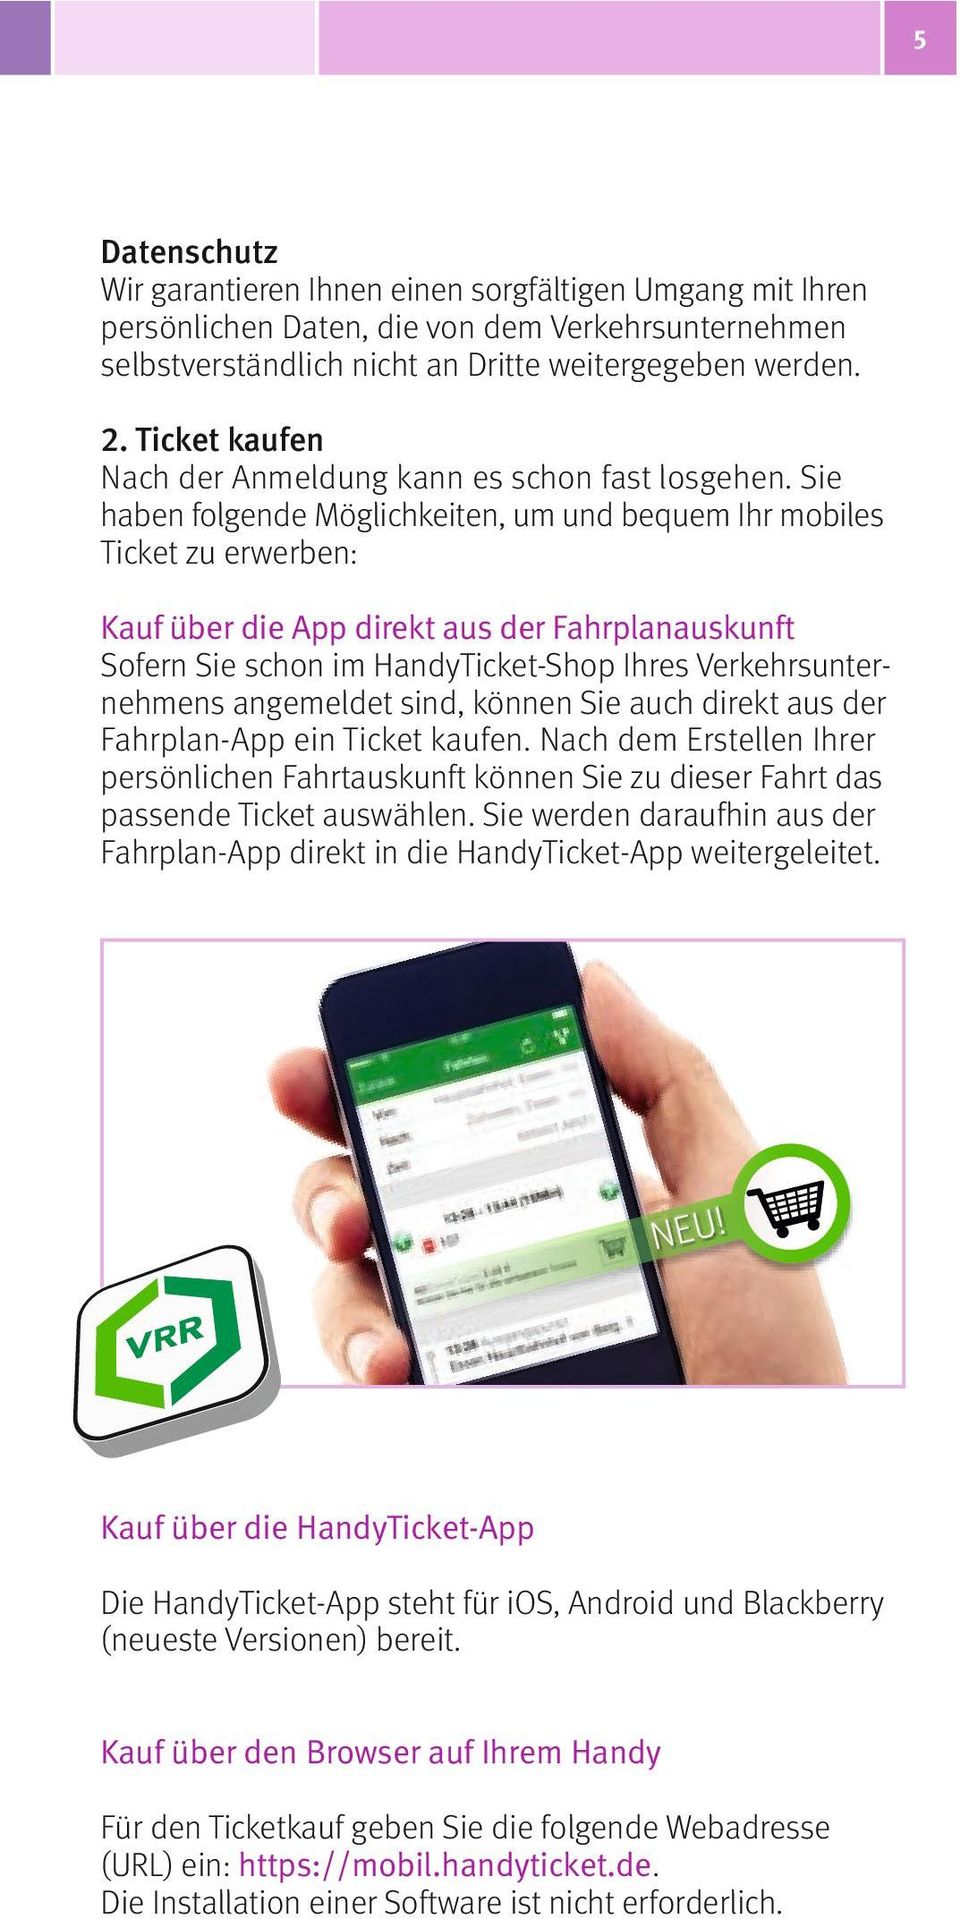 Sie haben folgende Möglichkeiten, um und bequem Ihr mobiles Ticket zu erwerben: Kauf über die App direkt aus der Fahrplanauskunft Sofern Sie schon im HandyTicket-Shop Ihres Verkehrsunternehmens